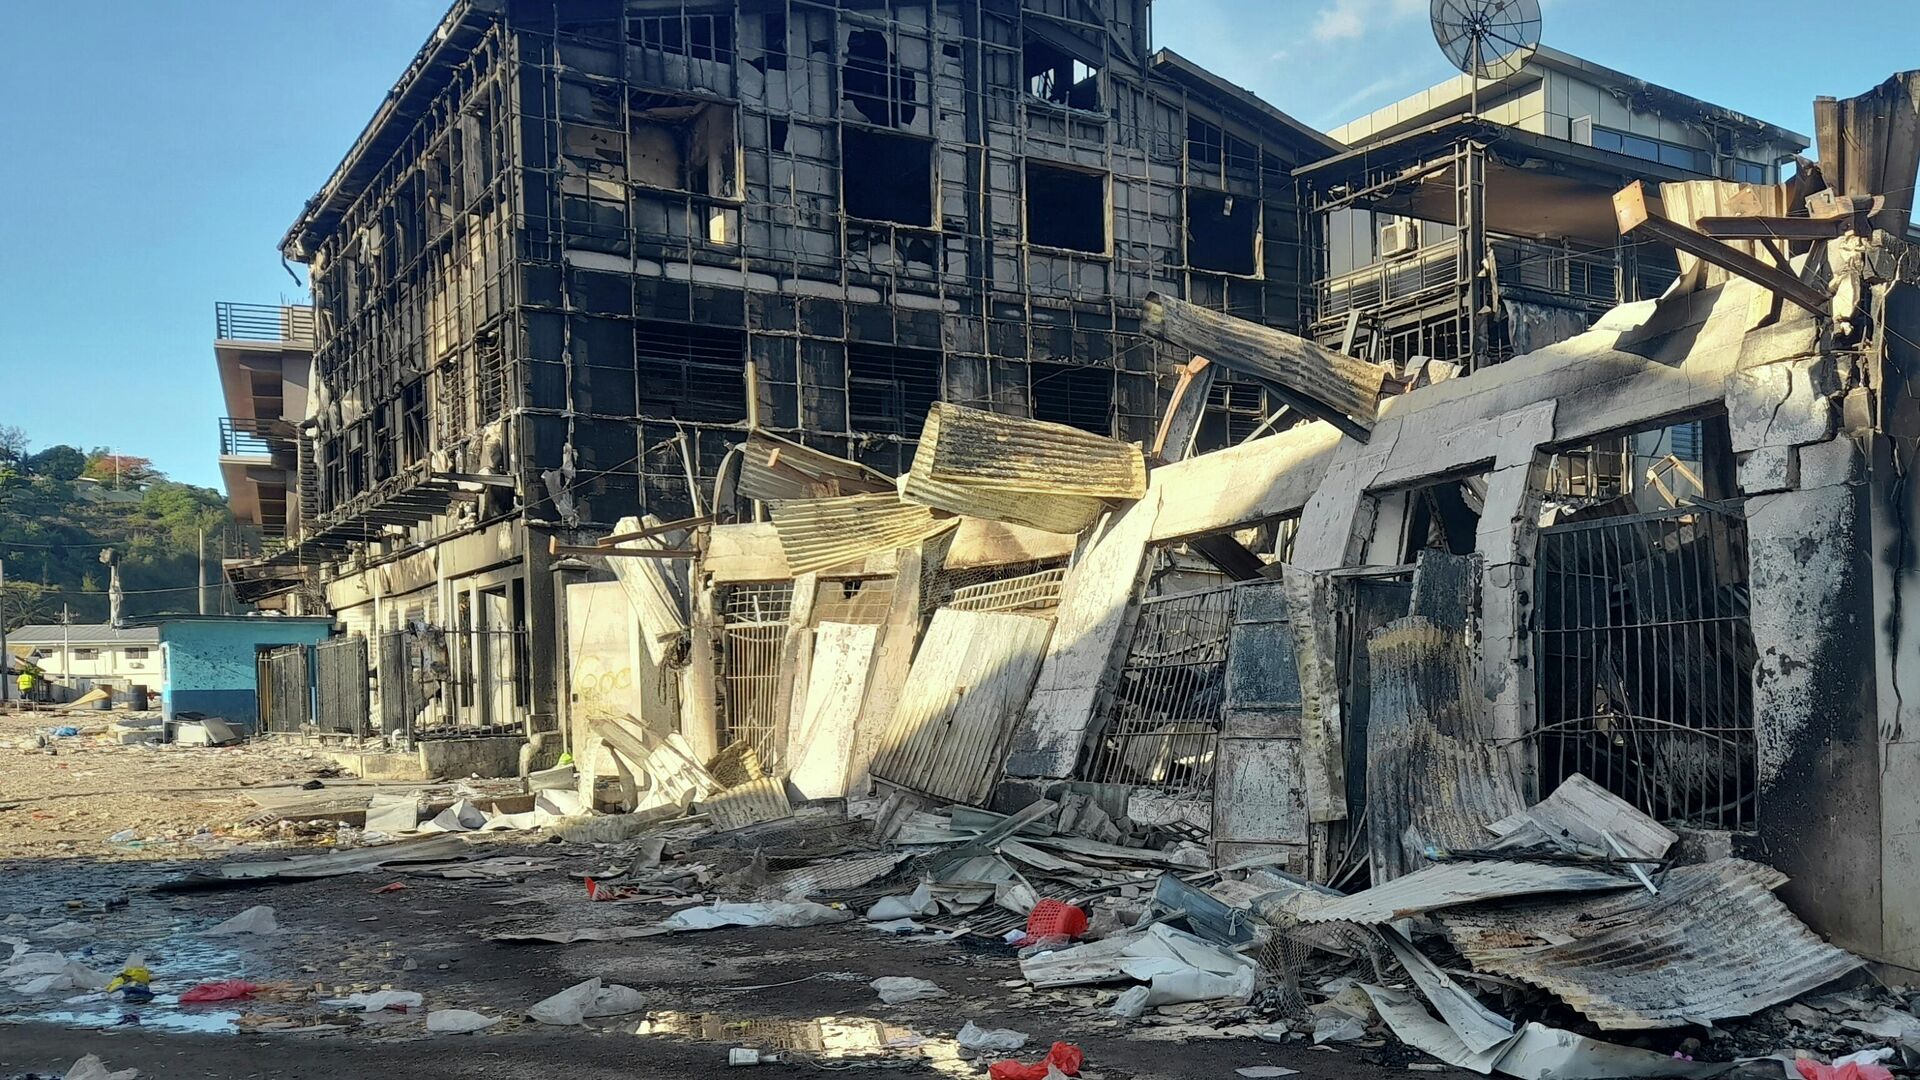 Ruinirana kineska četvrt posle protesta u glavnom gradu Solomonskih ostrva - Sputnik Srbija, 1920, 27.11.2021